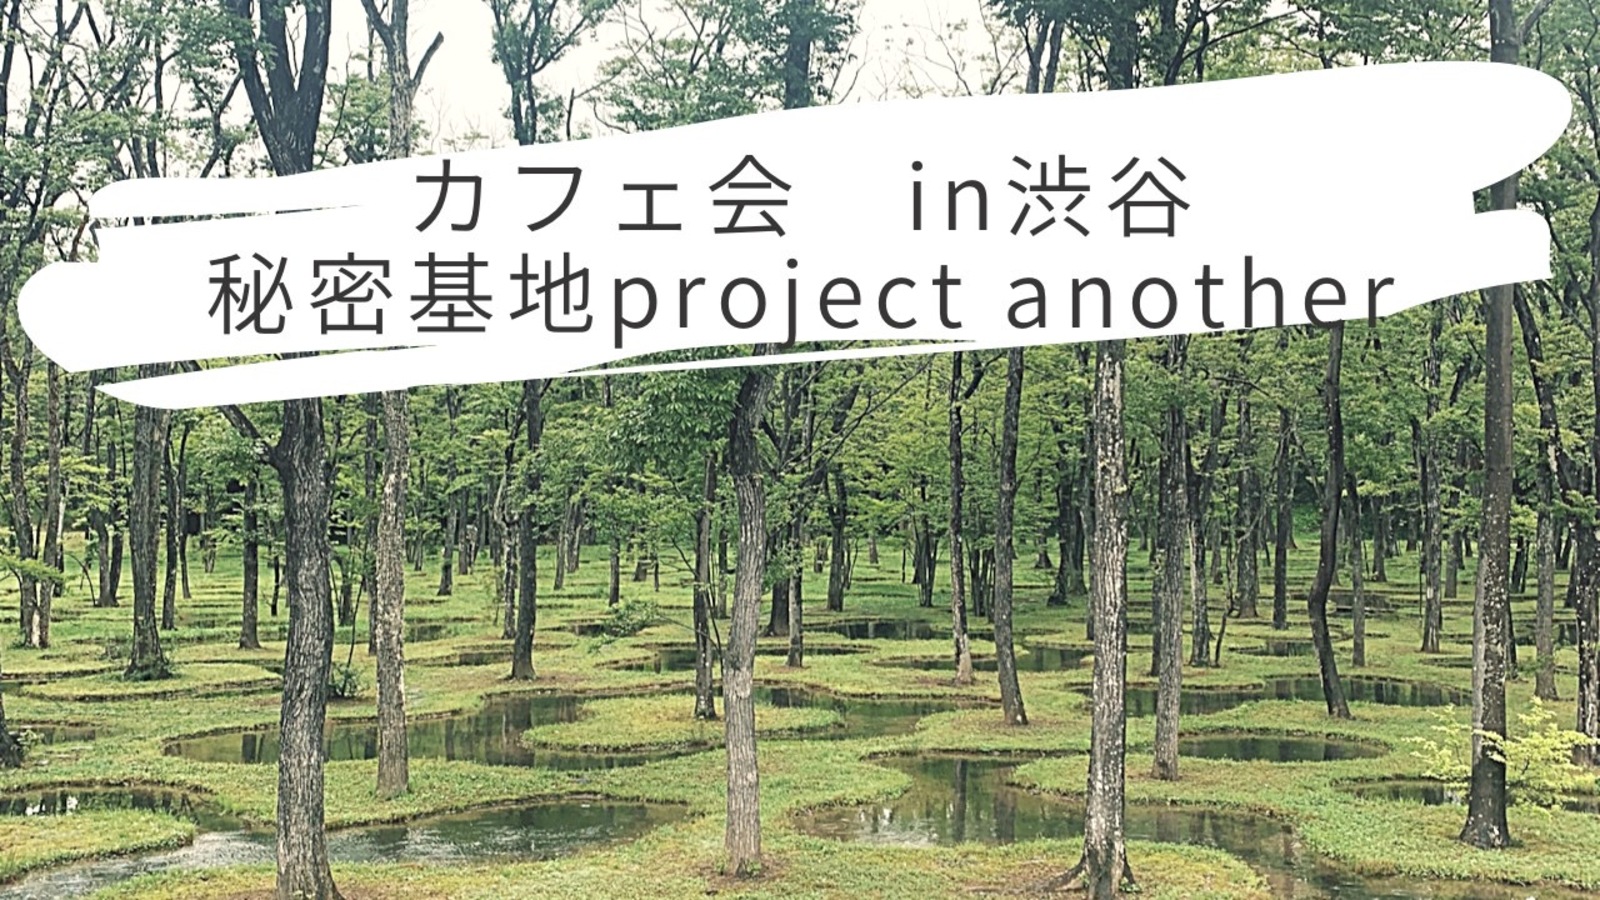 カフェ会　in 渋谷　〜秘密基地project〜　another